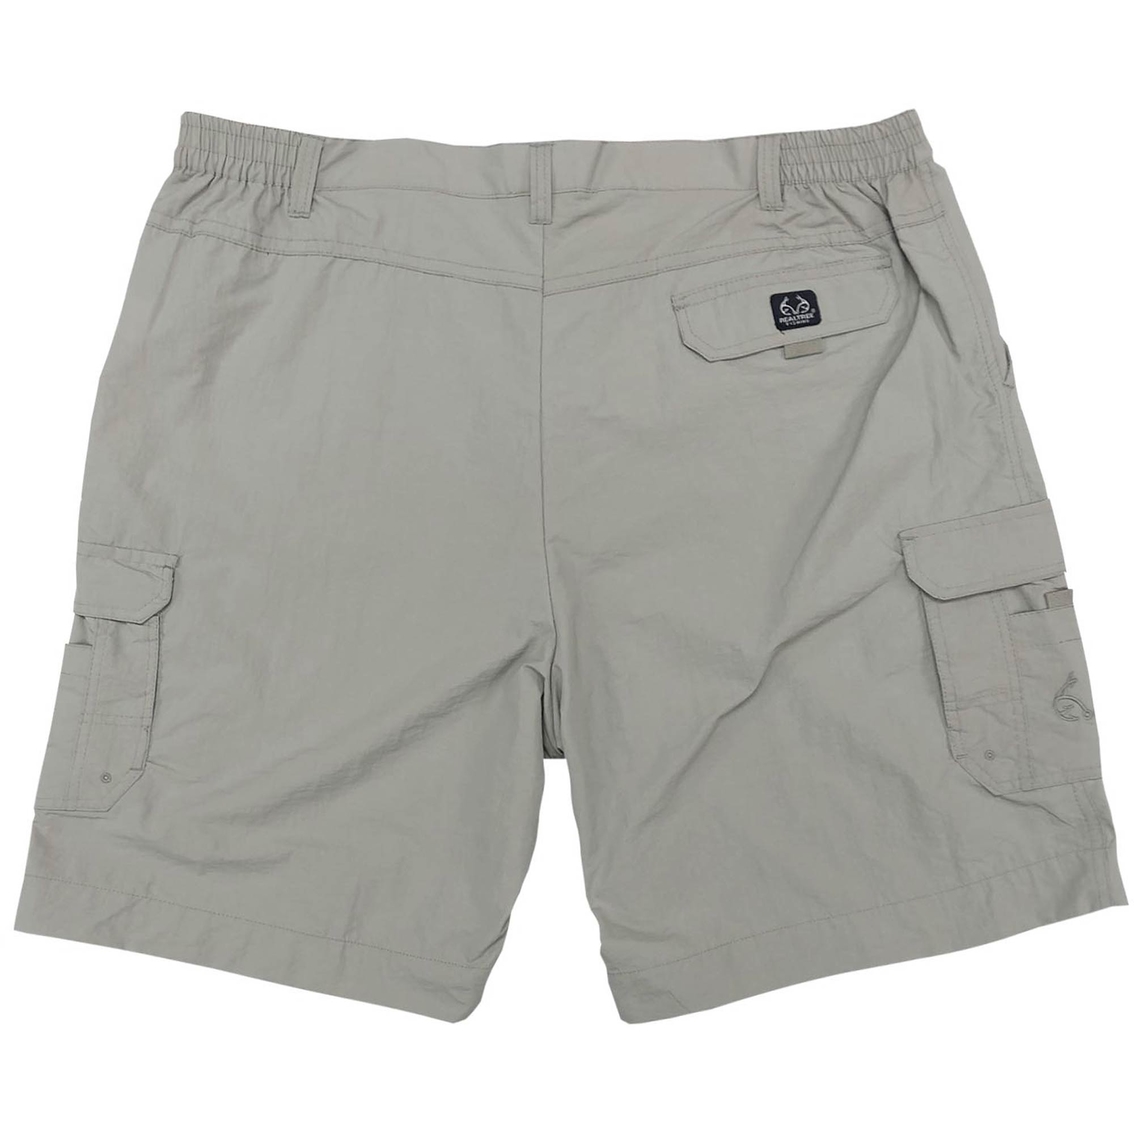 Realtree Fishing Shorts, Shorts, Clothing & Accessories